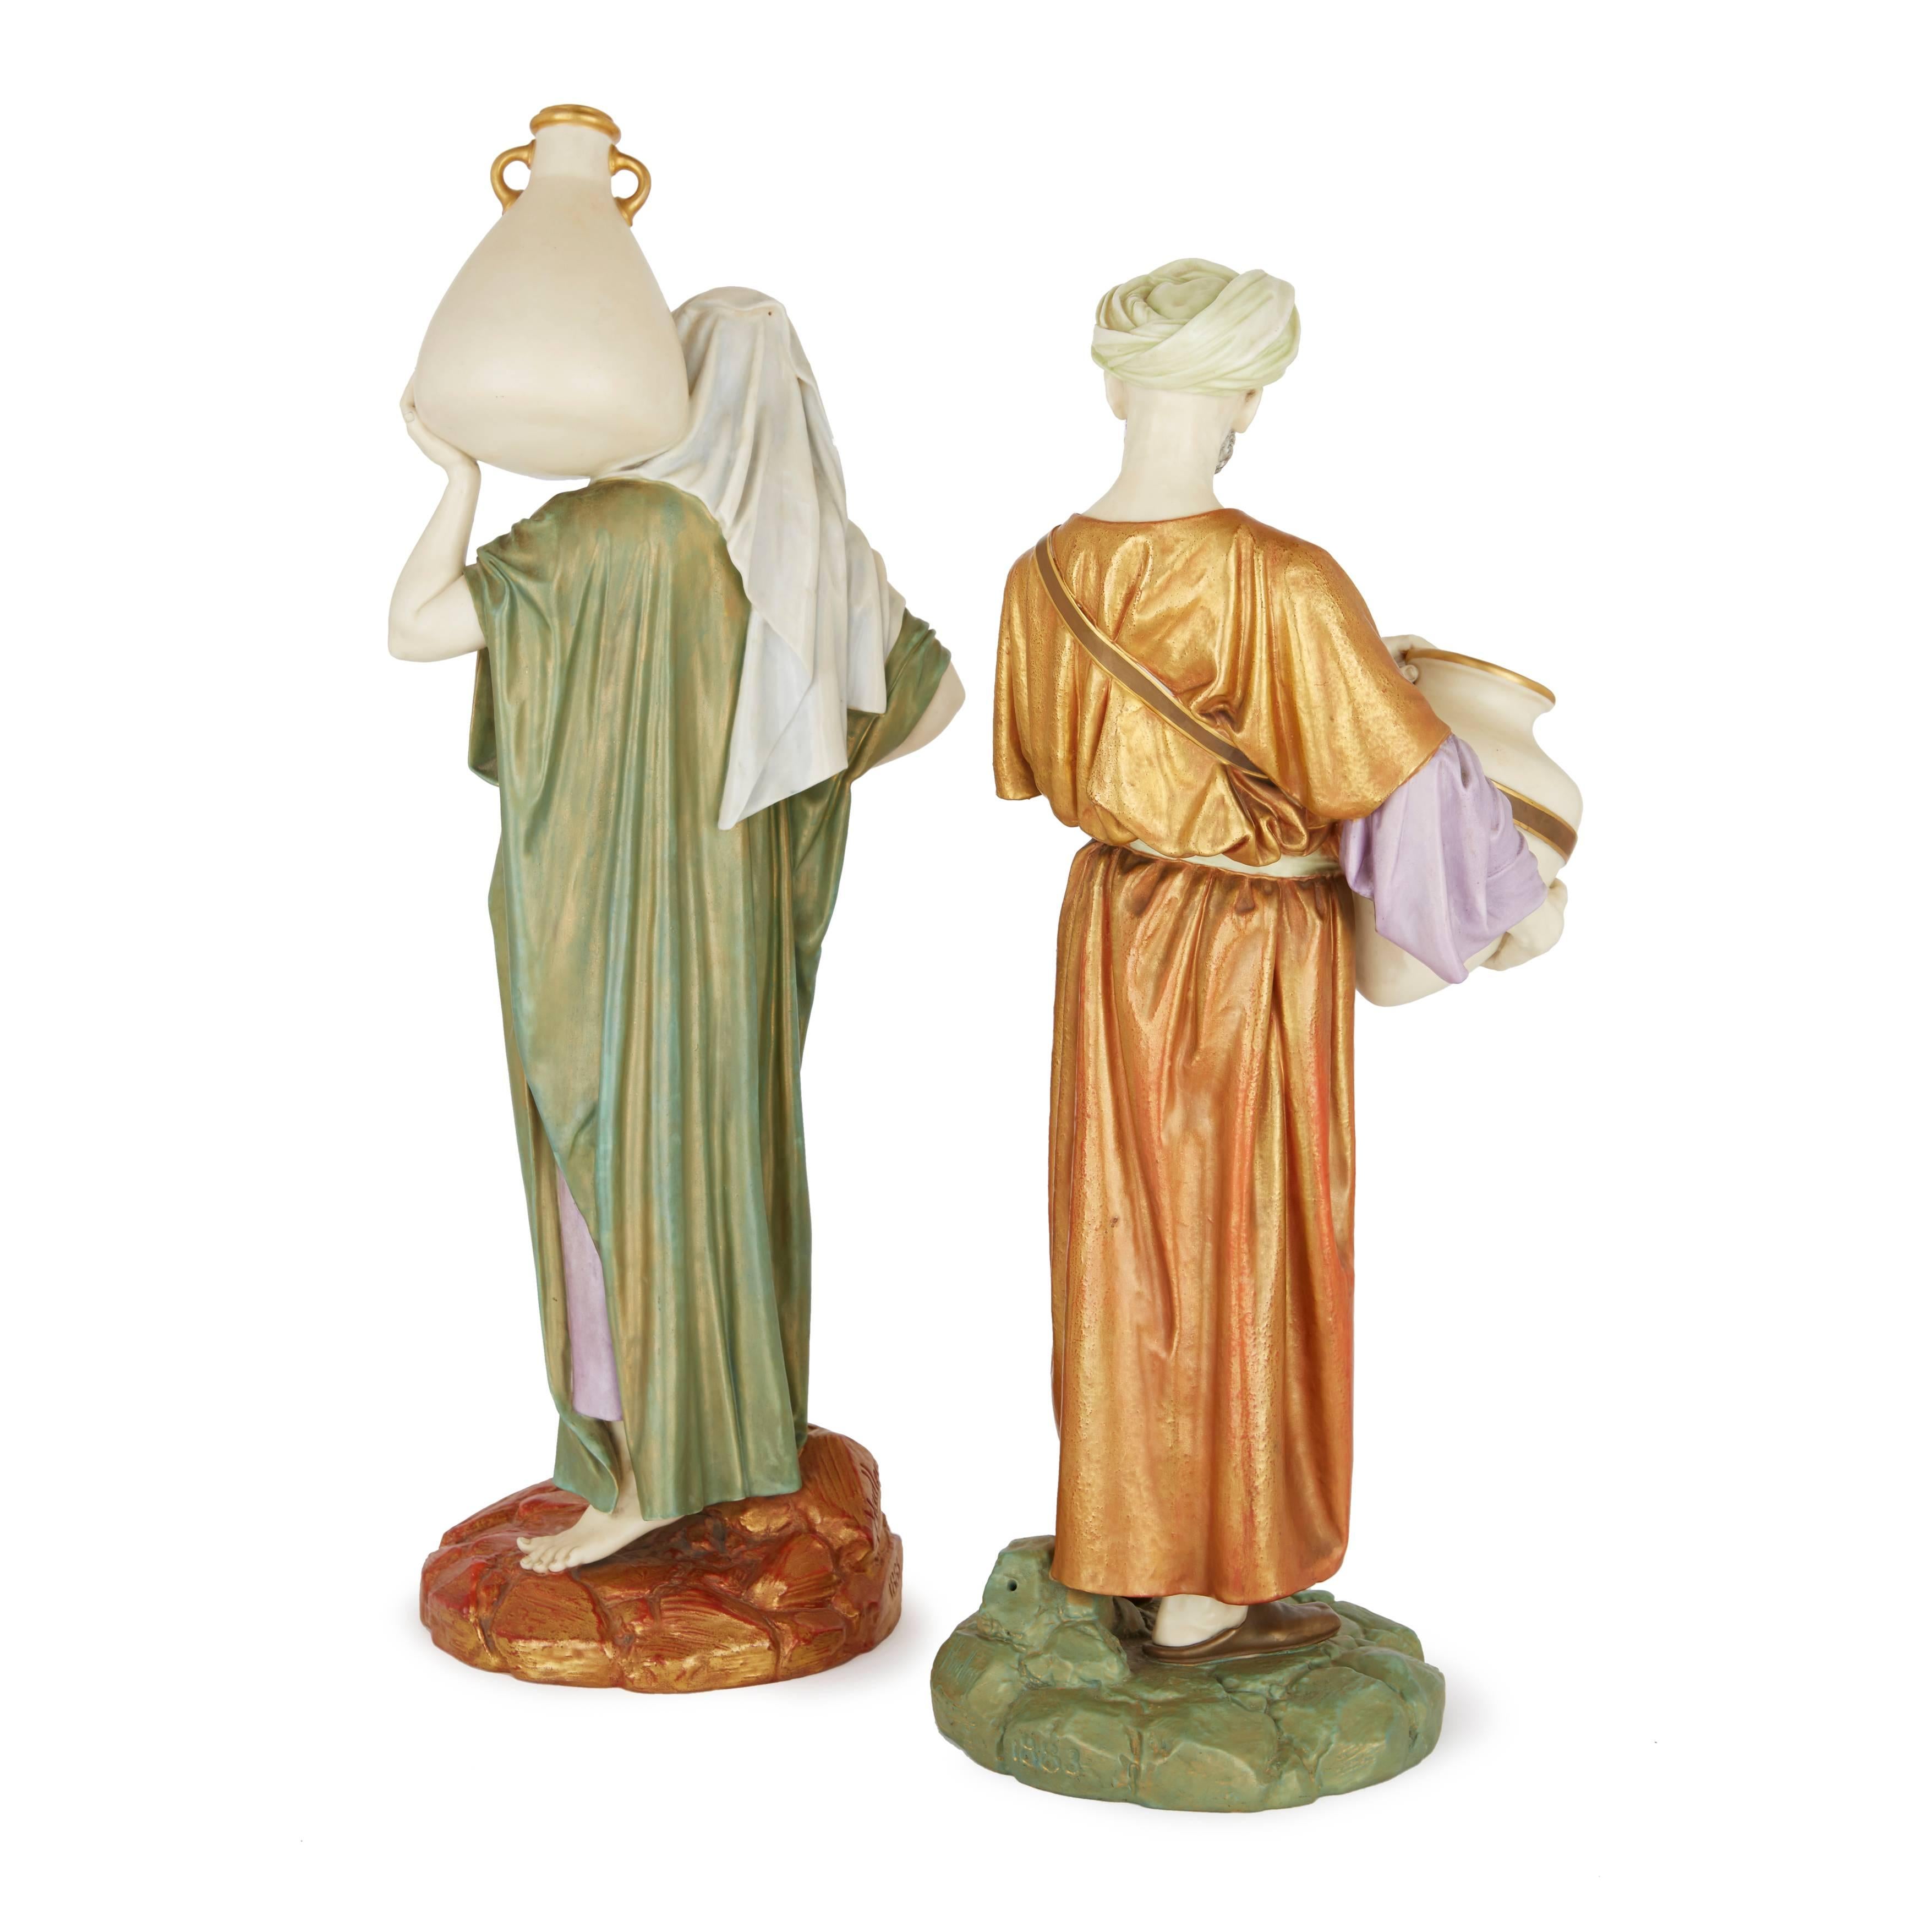 Ces deux figures orientalistes raffinées représentent un homme et une femme en costume oriental, tenant chacun une cruche d'eau en céramique. La paire a été modelée par le céramiste britannique James Hadley, qui était le principal modeleur de la